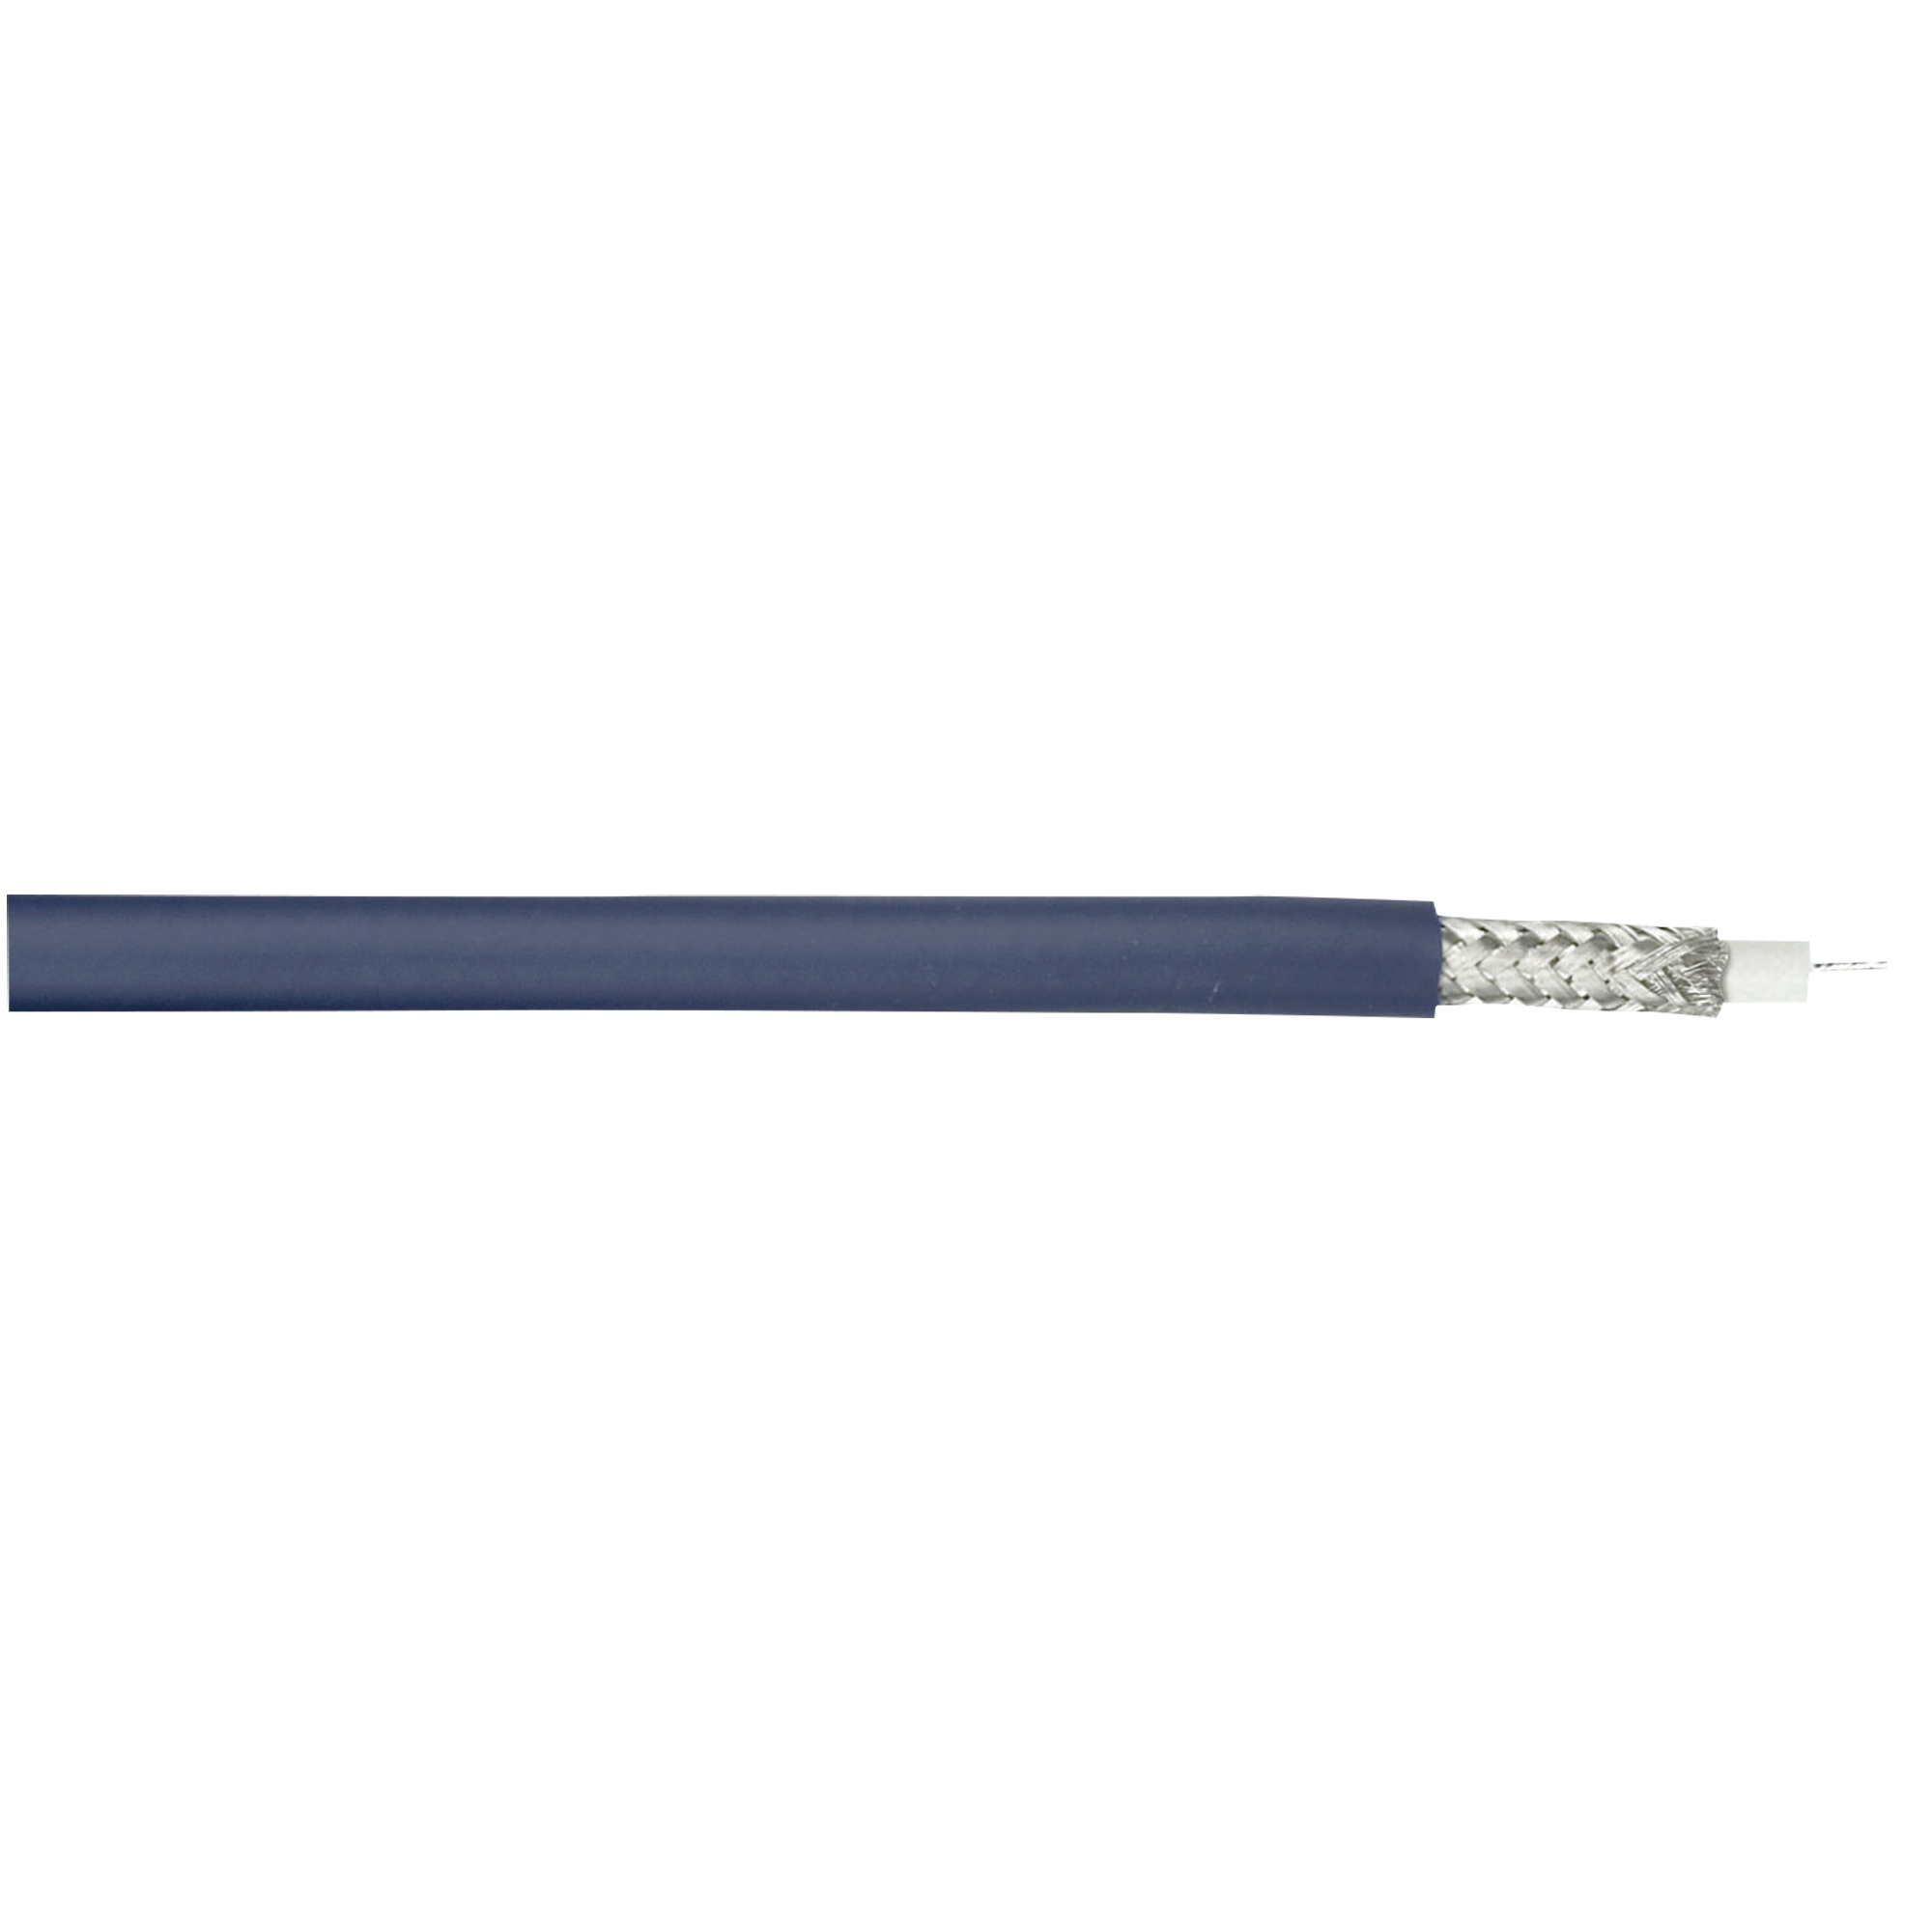 DAP AV-150 Äußerst flexibles, doppelt geschirmtes Video-Kabel, HD-Ready (RG-59), 100-m-Rolle